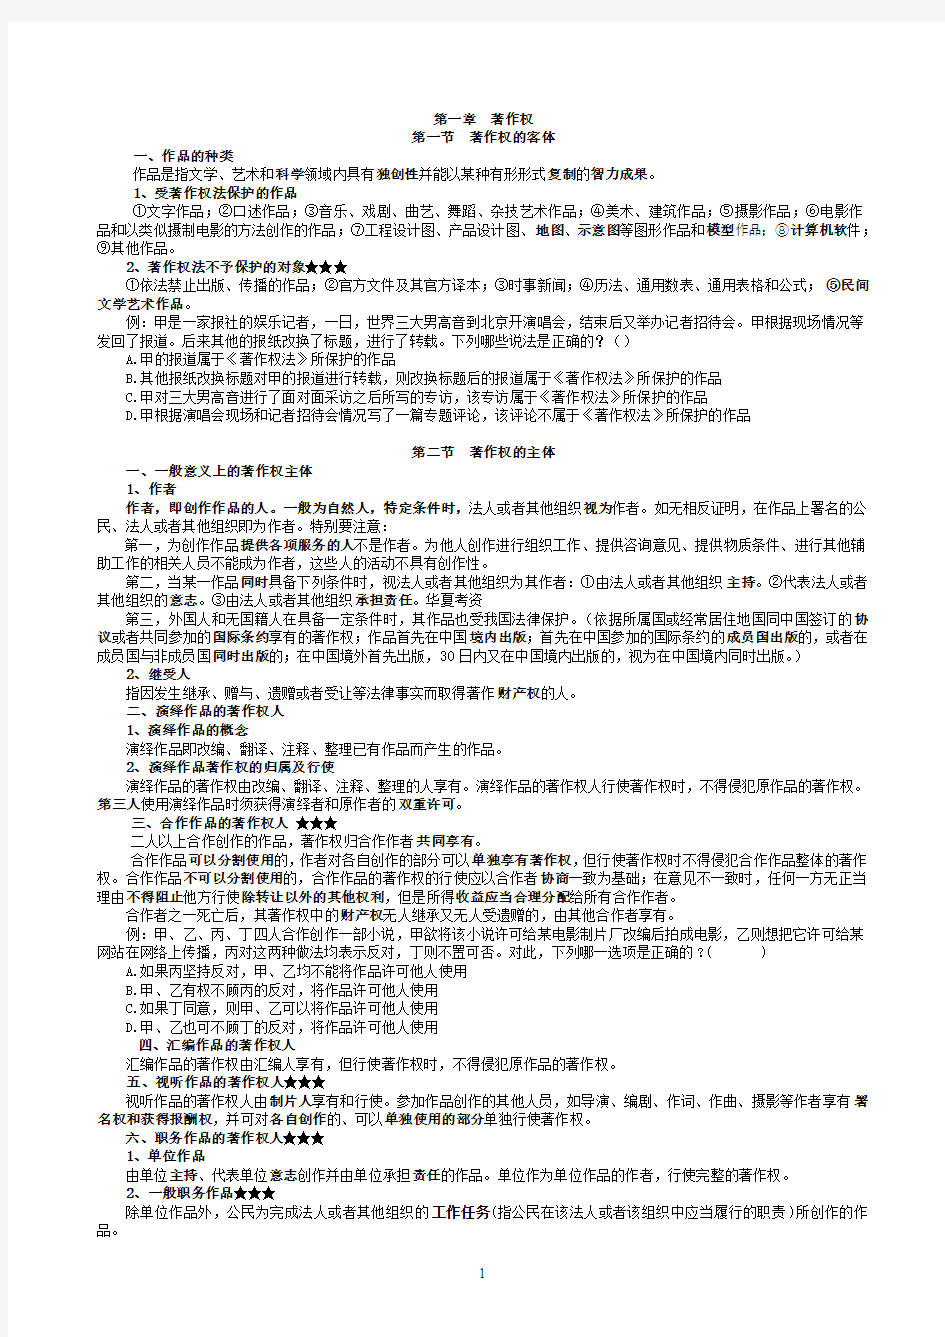 2011年律政保成提高阶段刘安知识产权讲义